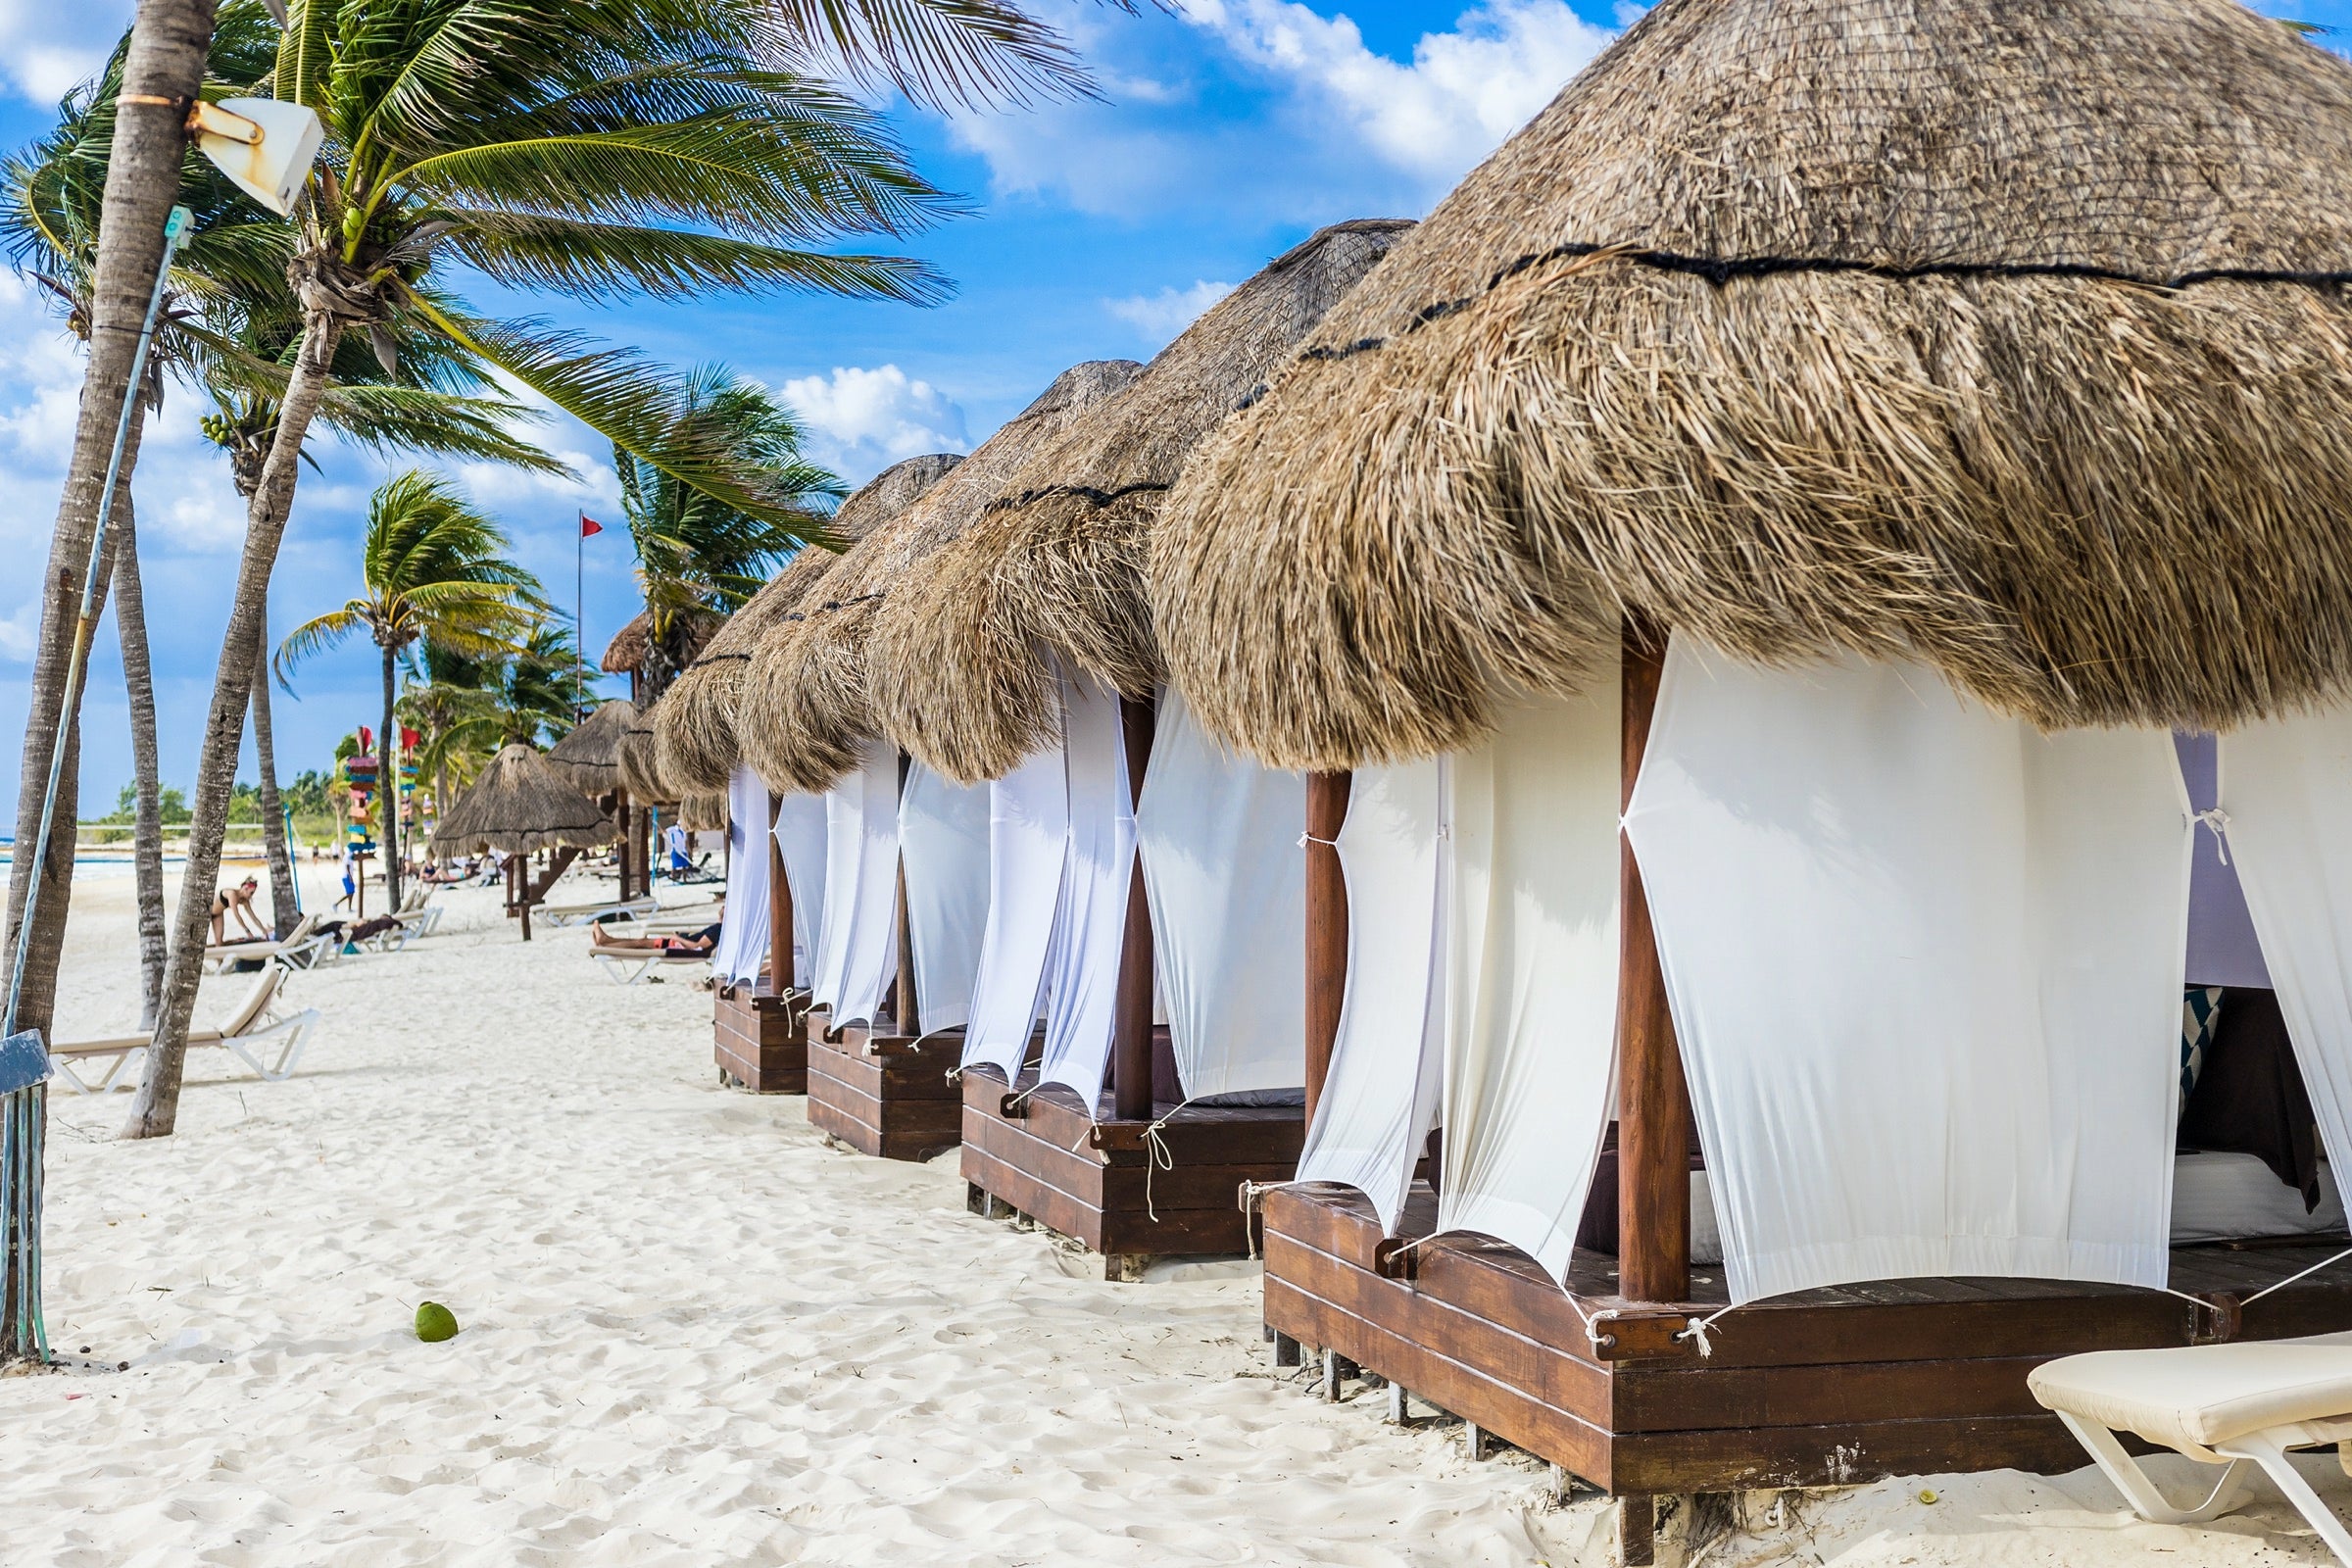 Cabanas on a tropical beach